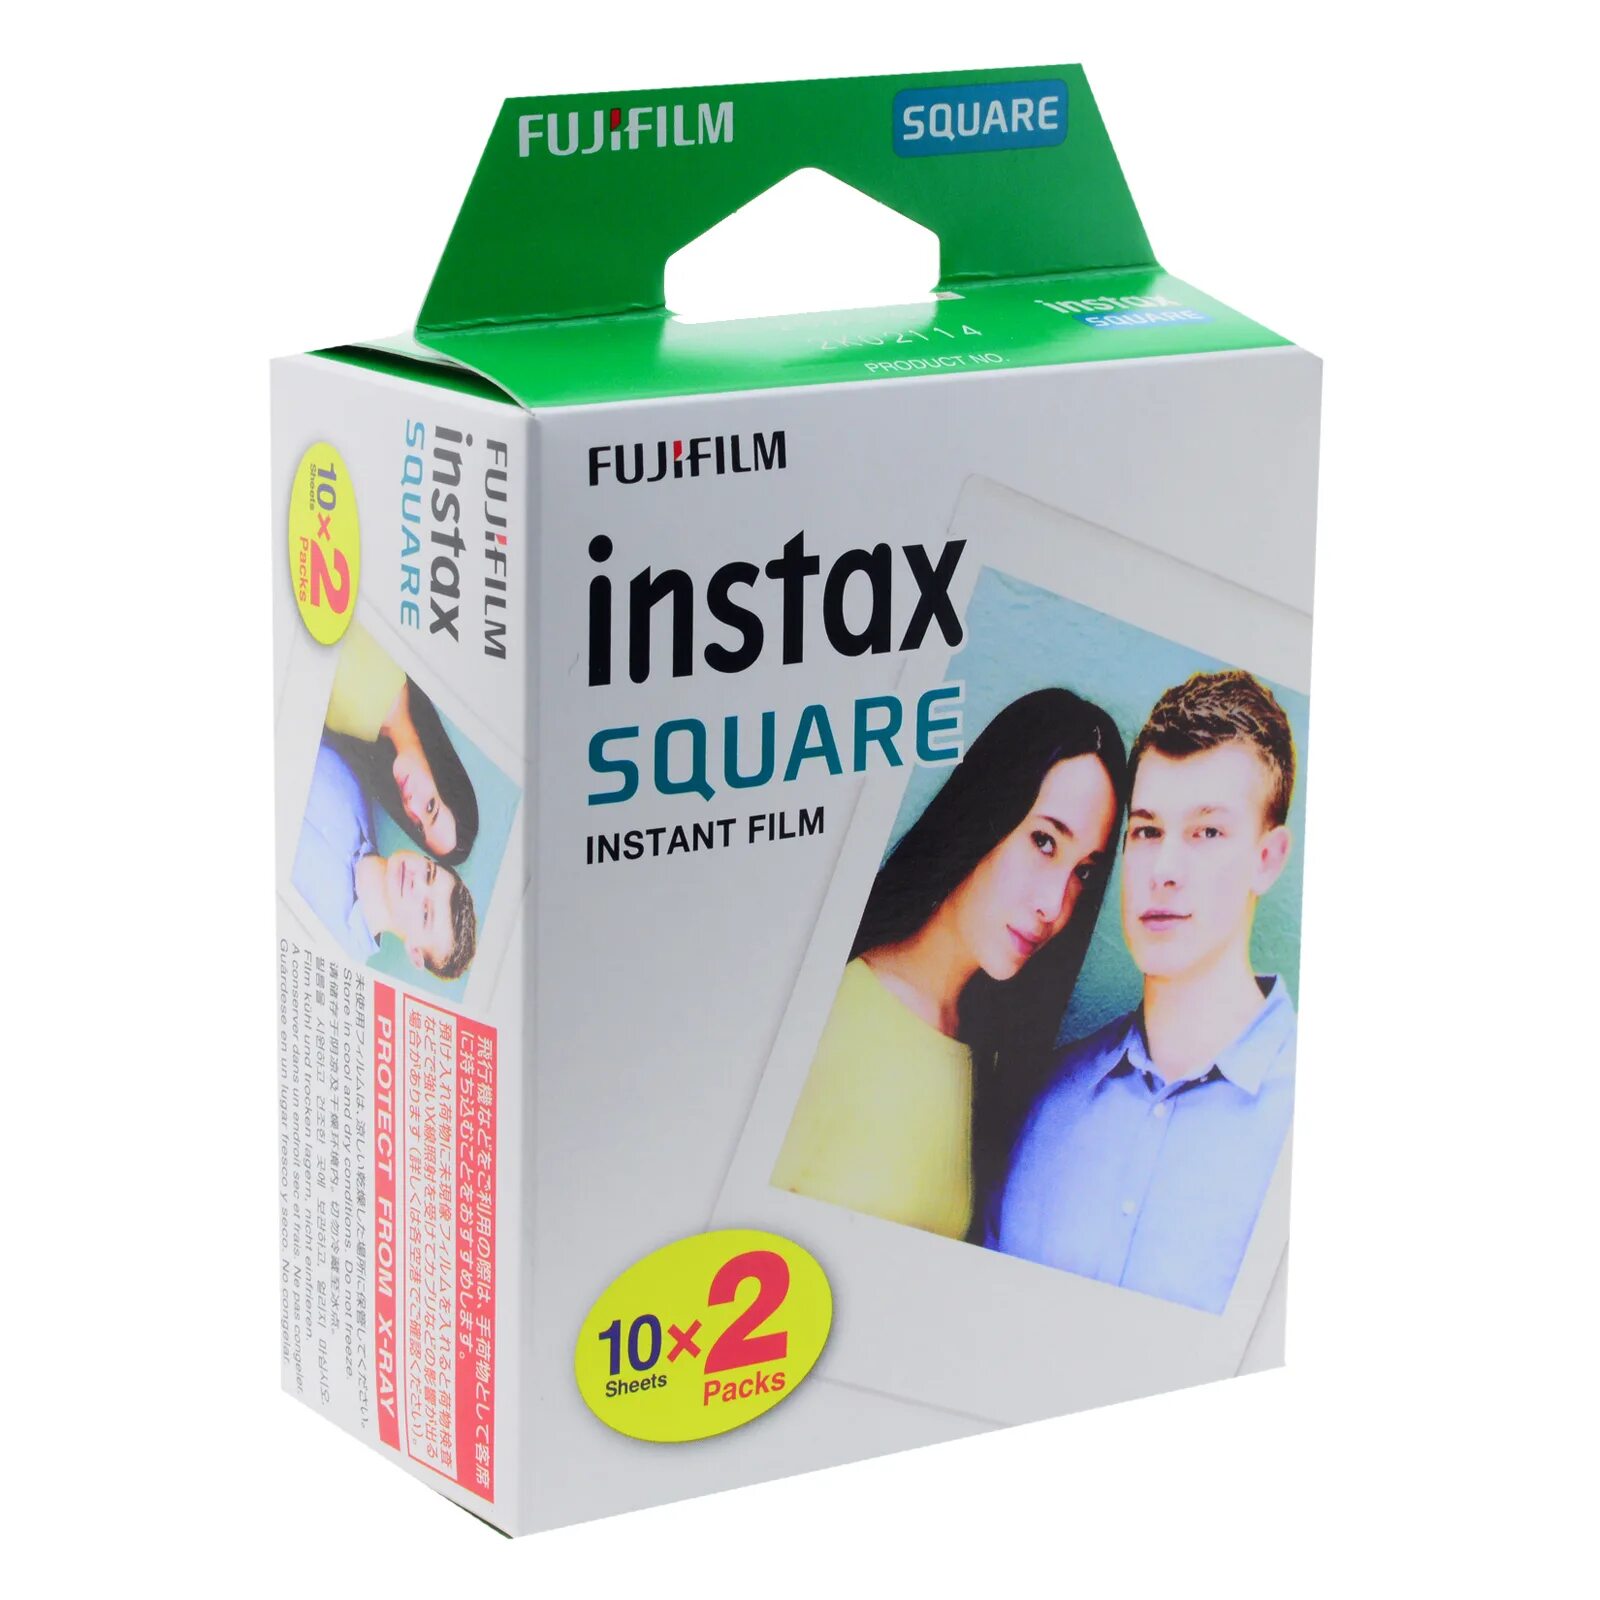 Картридж для фотоаппарата Fujifilm Instax Square. Фотопленка Fujifilm Instax Square 10шт. Картридж для моментальной печати Fujifilm Instax Square. Fuji Instax Mini картриджи.